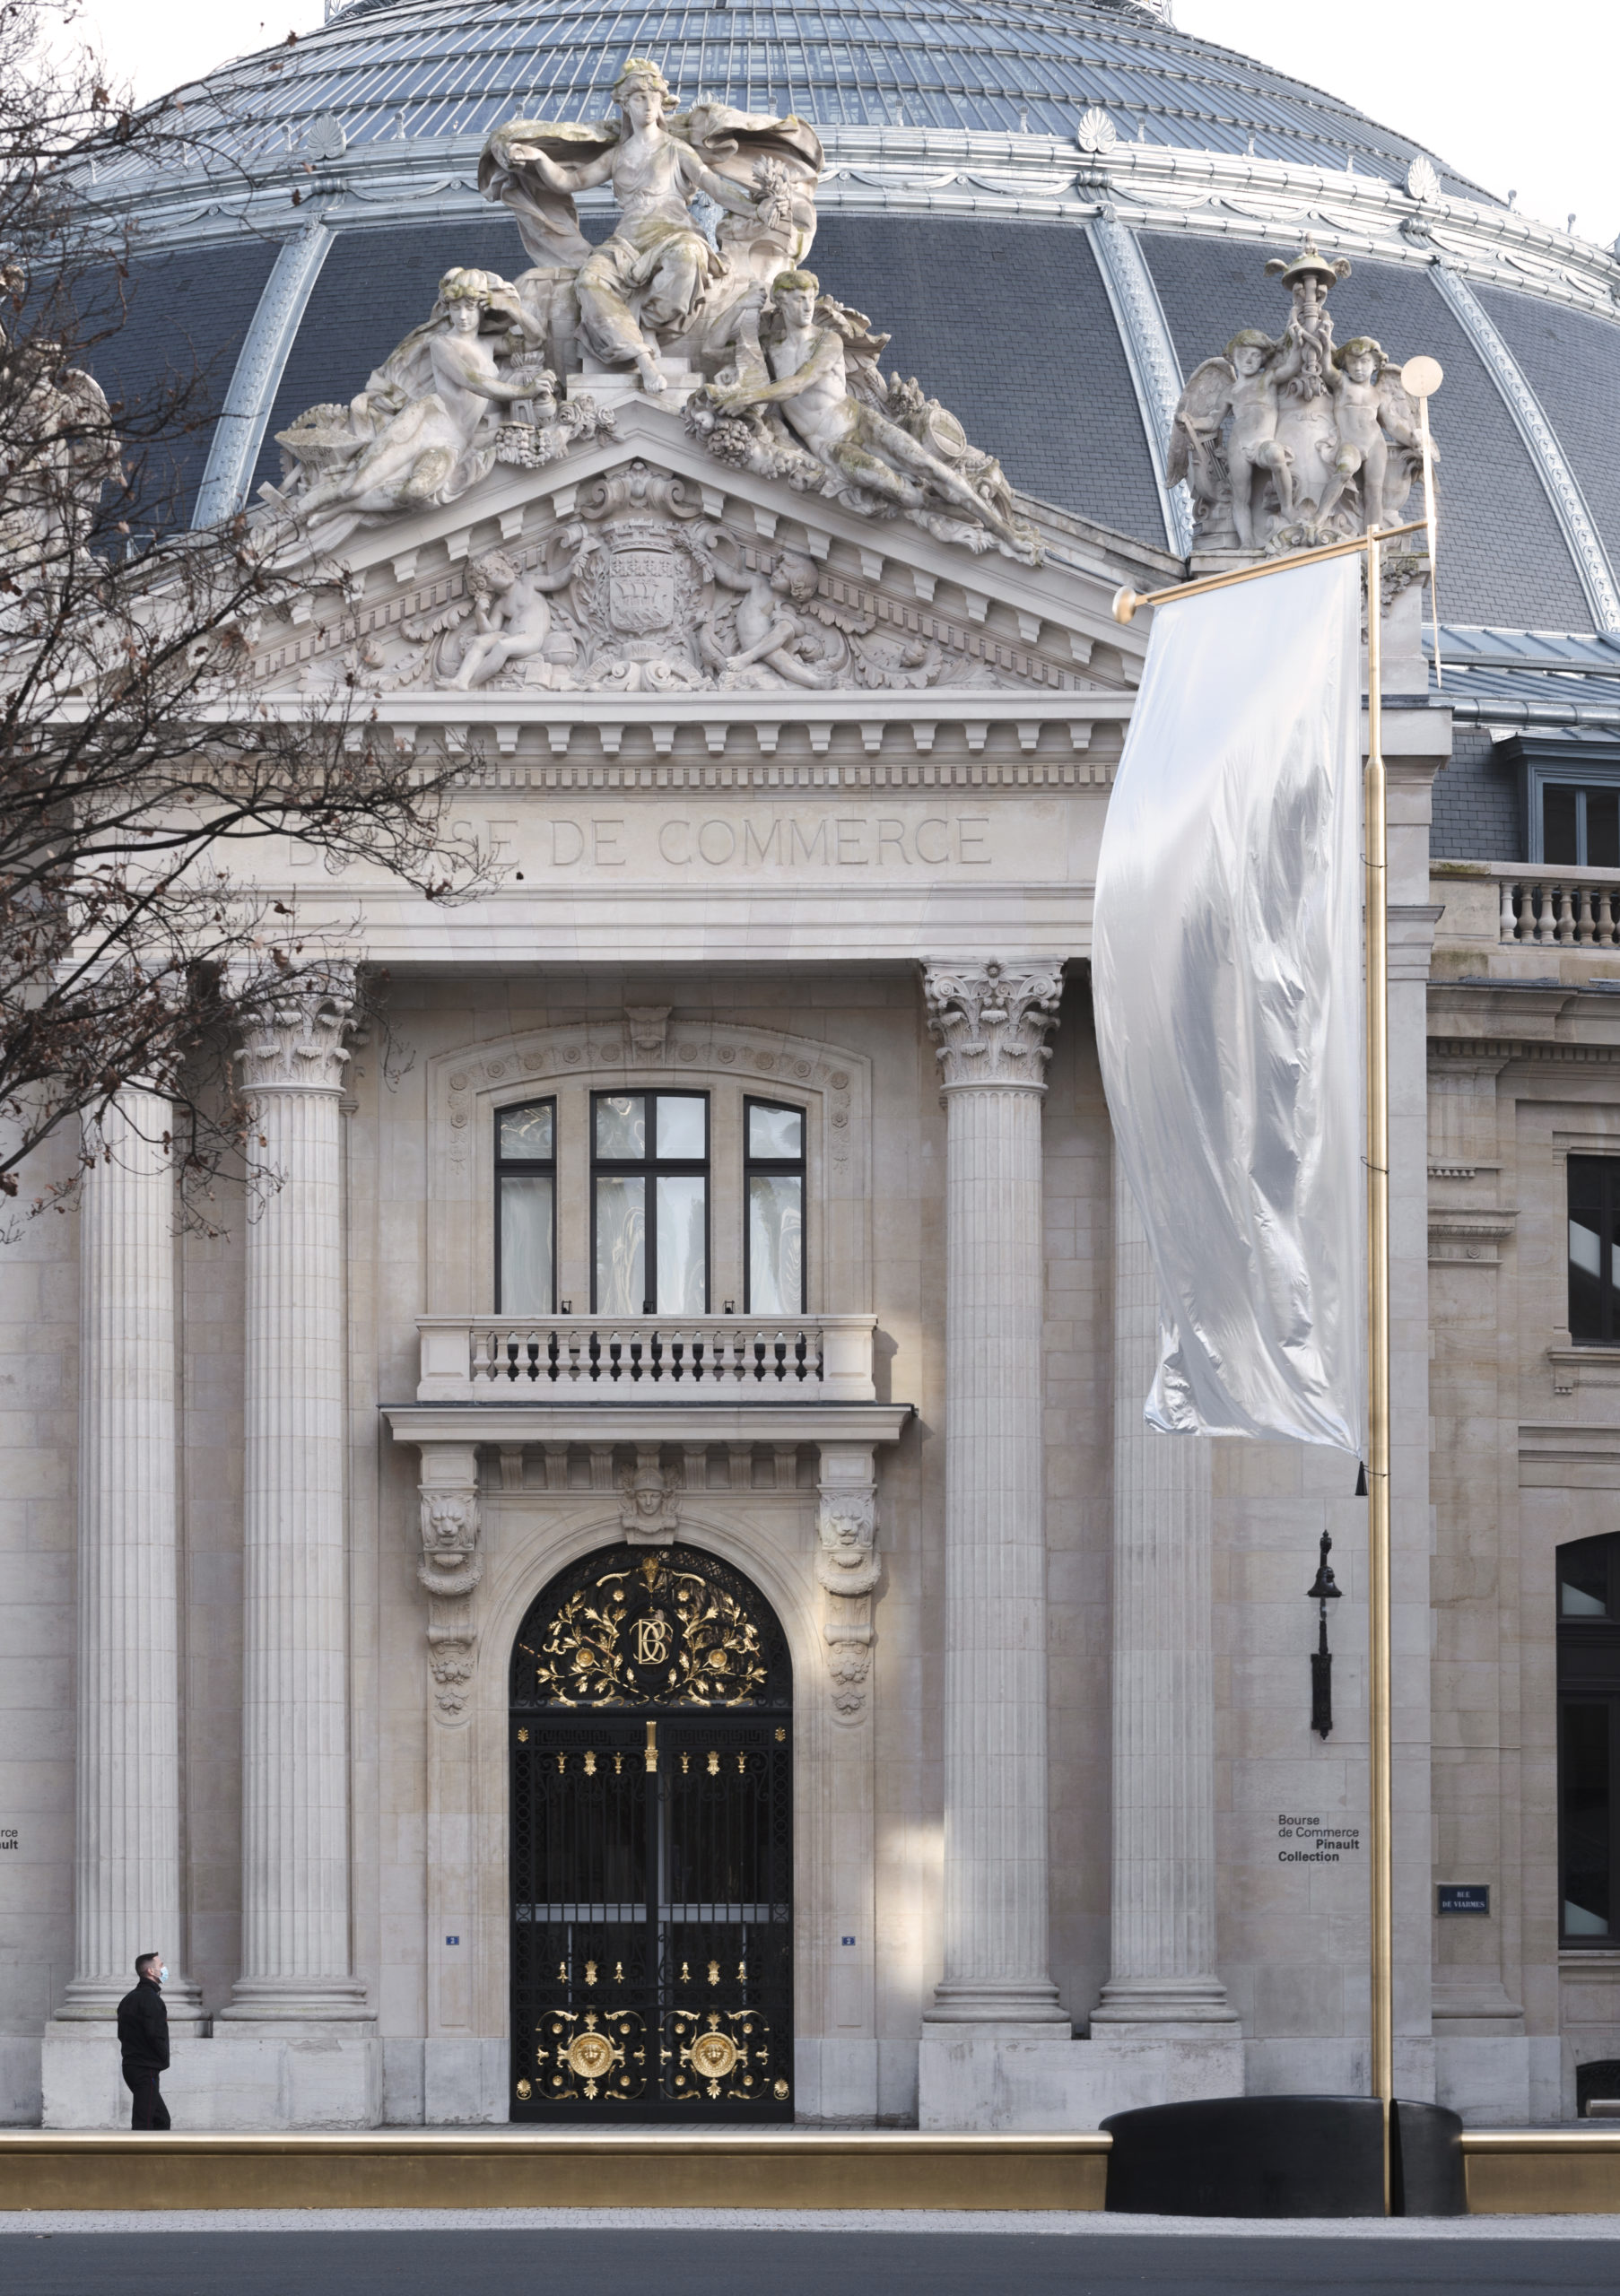 Bourse de Commerce - Pinault Collection, Paris